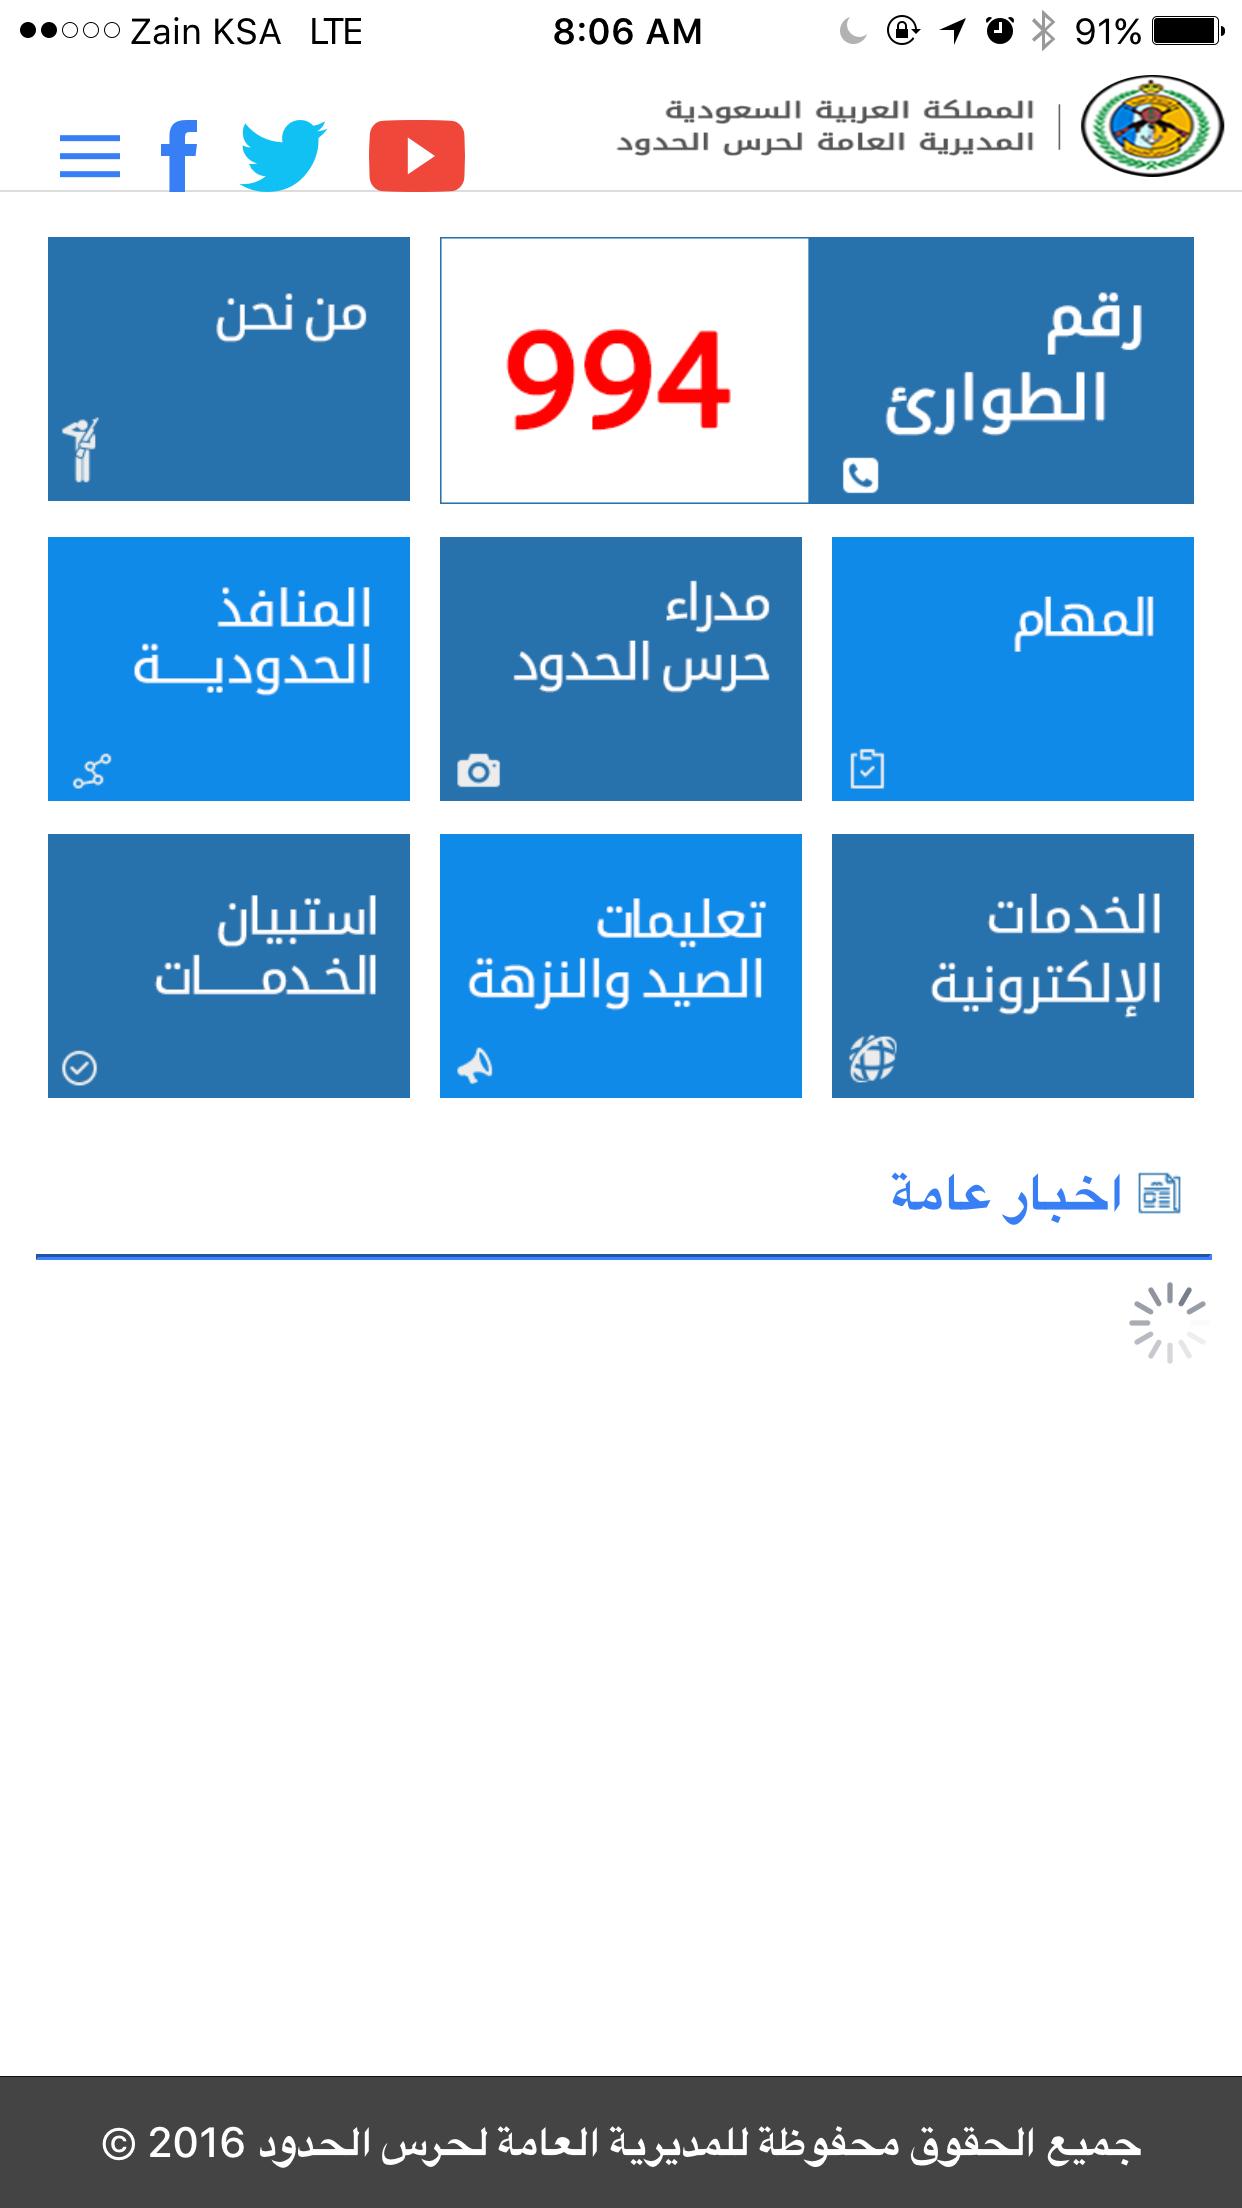 بوابة - حرس الحدود السعودي for Android - APK Download